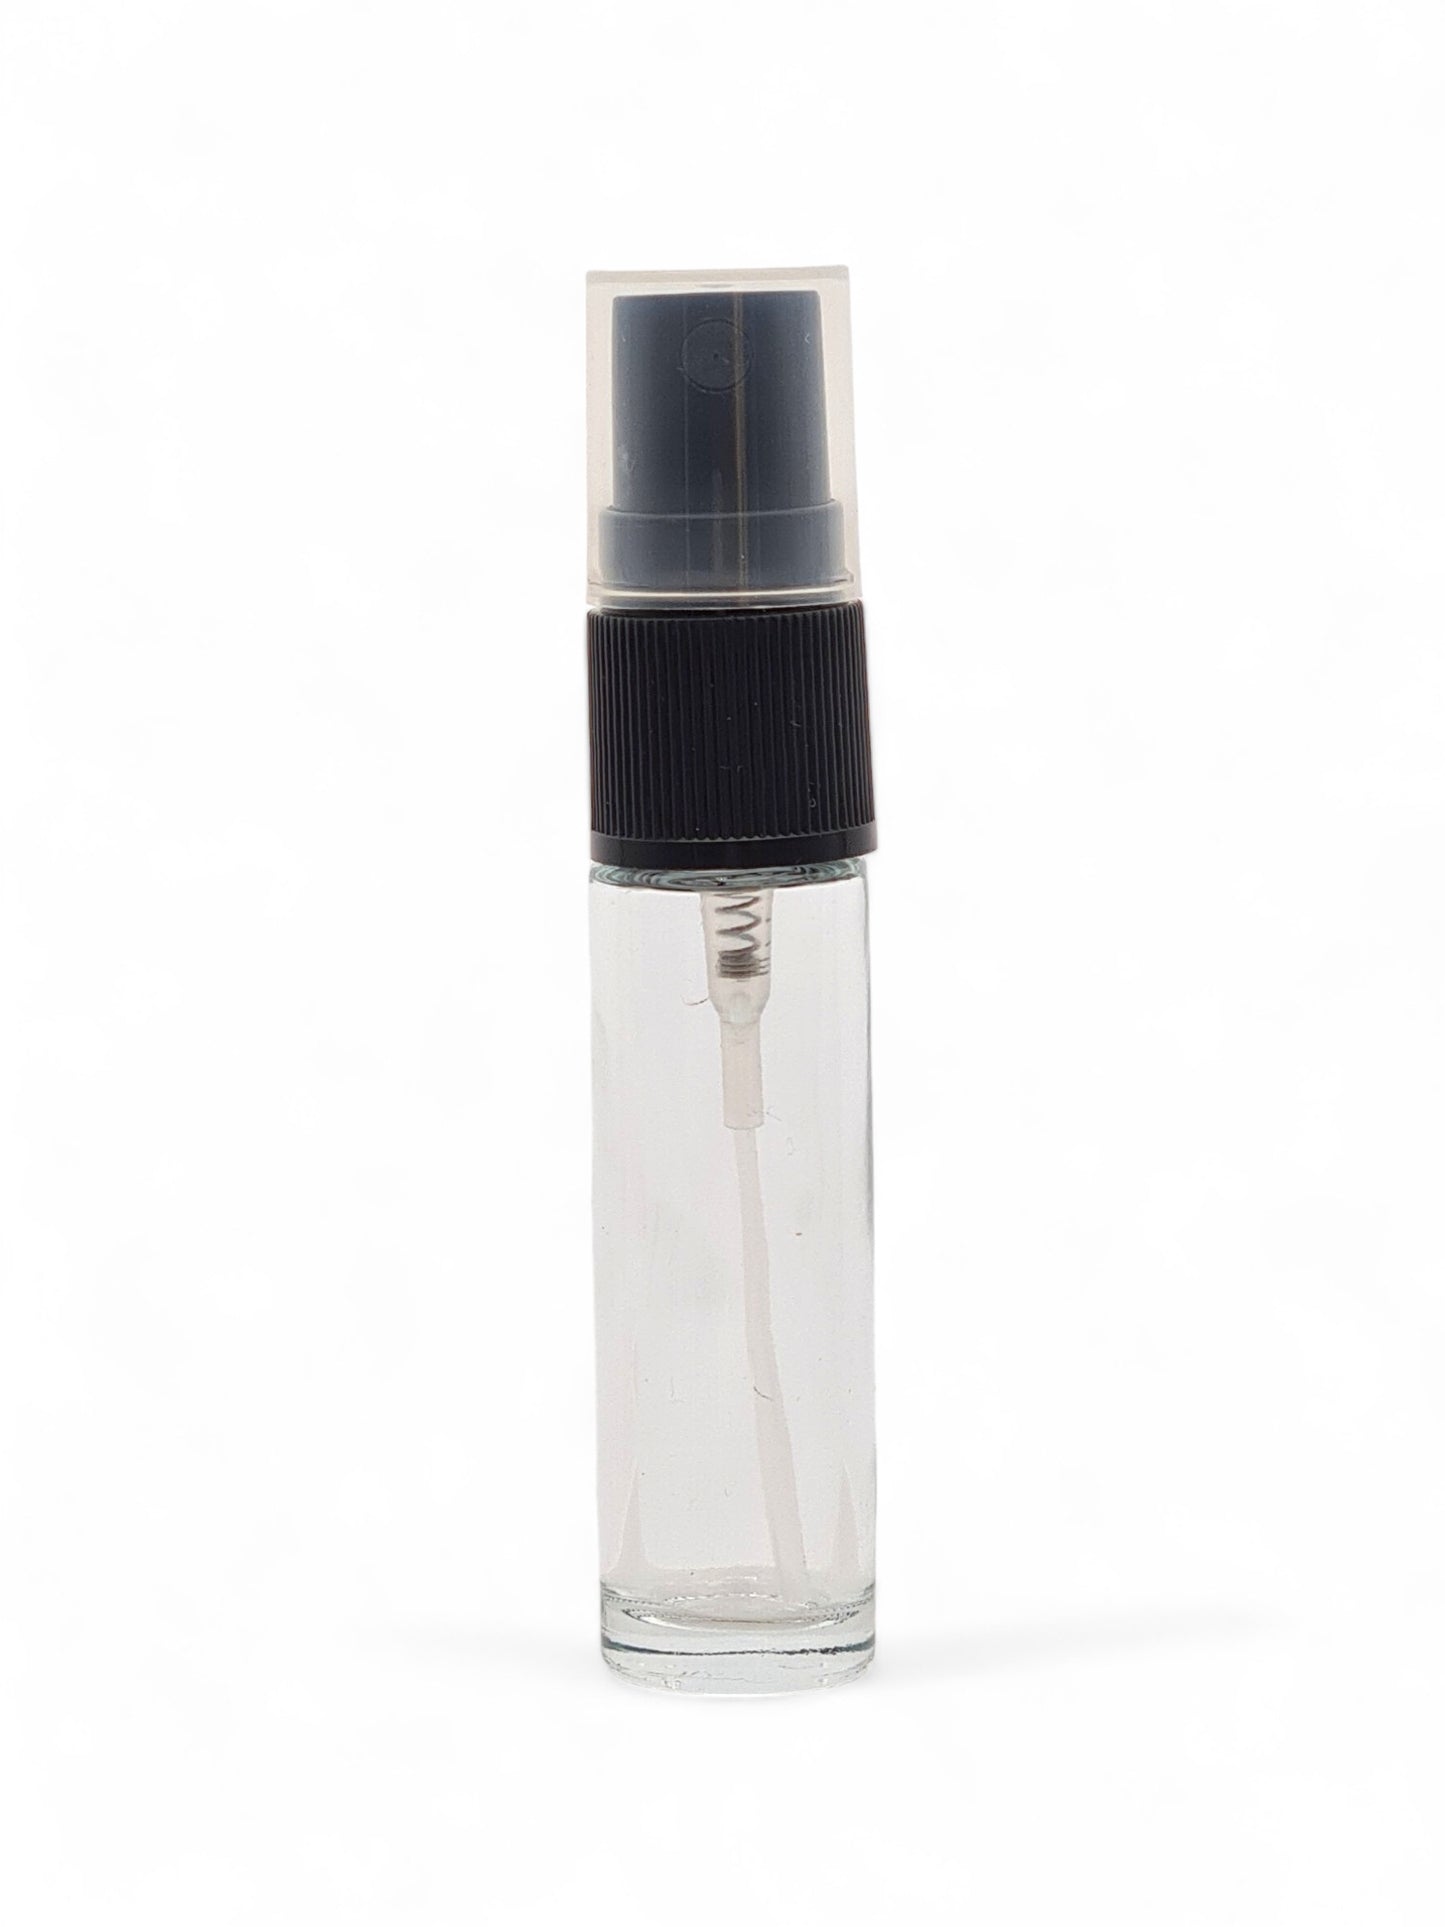 10ml Slim Glass Rollette Bottle with Black Finger Spray